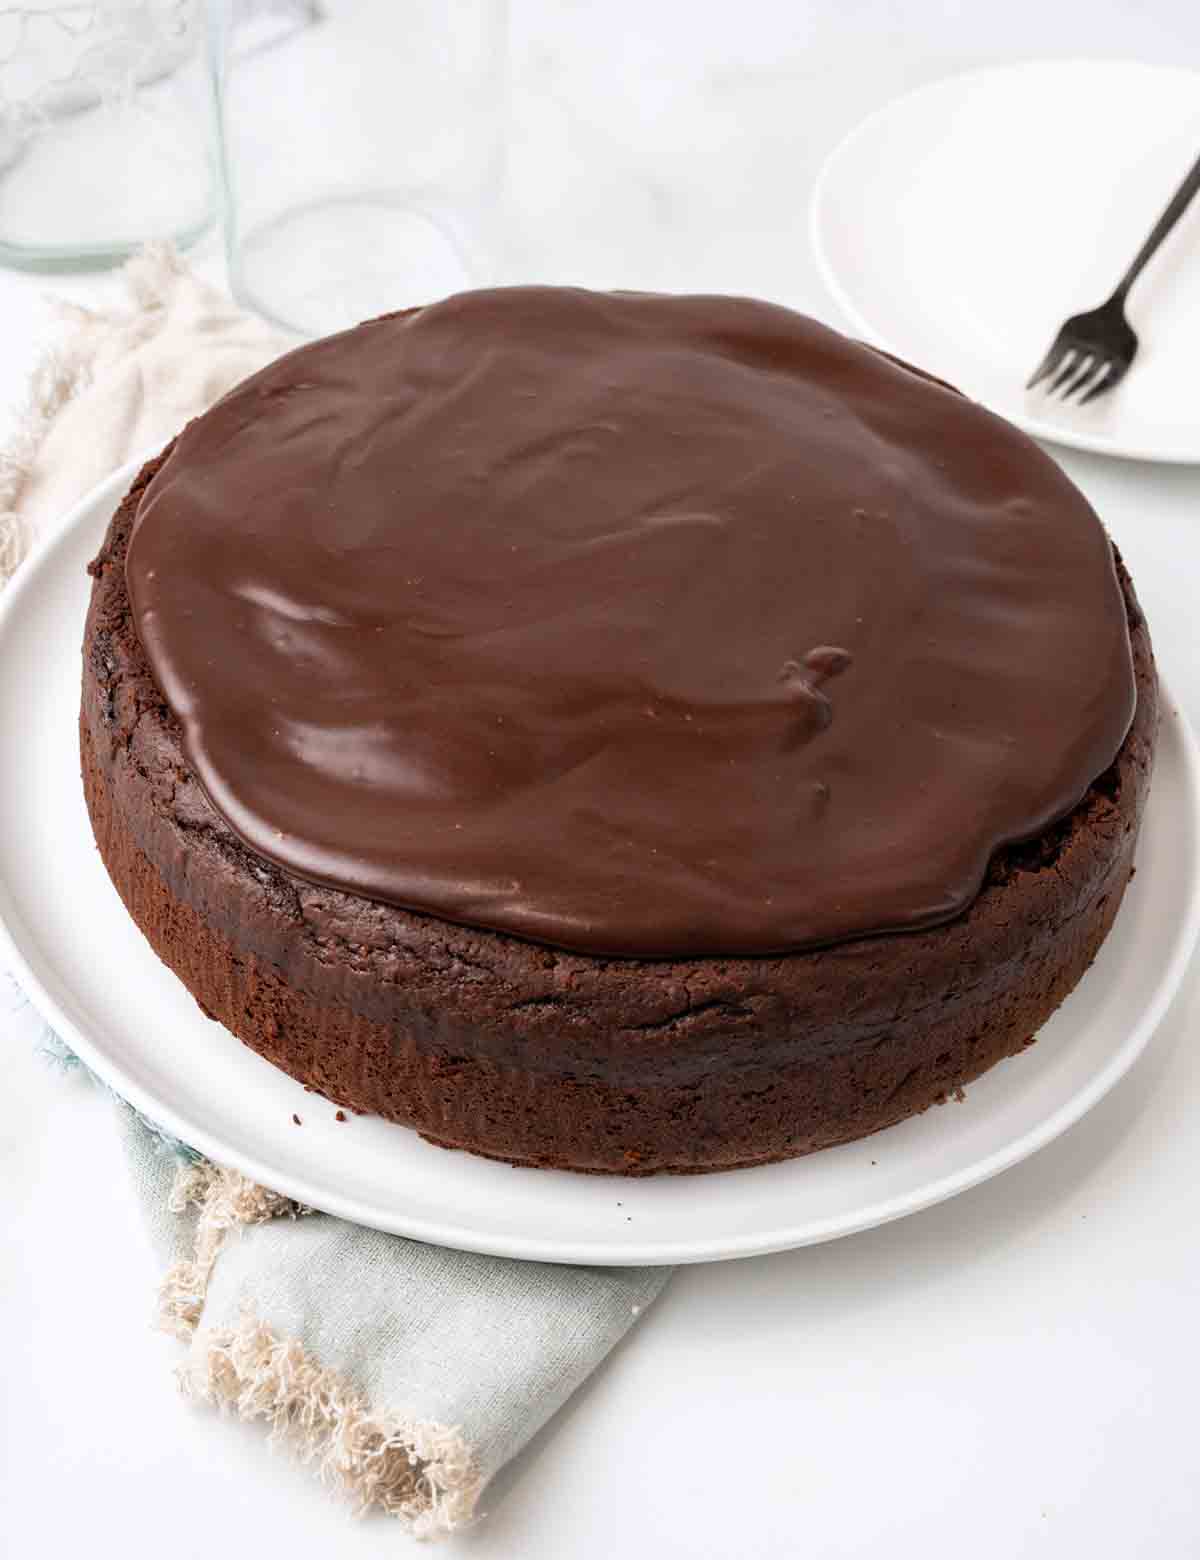 Whole chocolate mud cake on white platter.